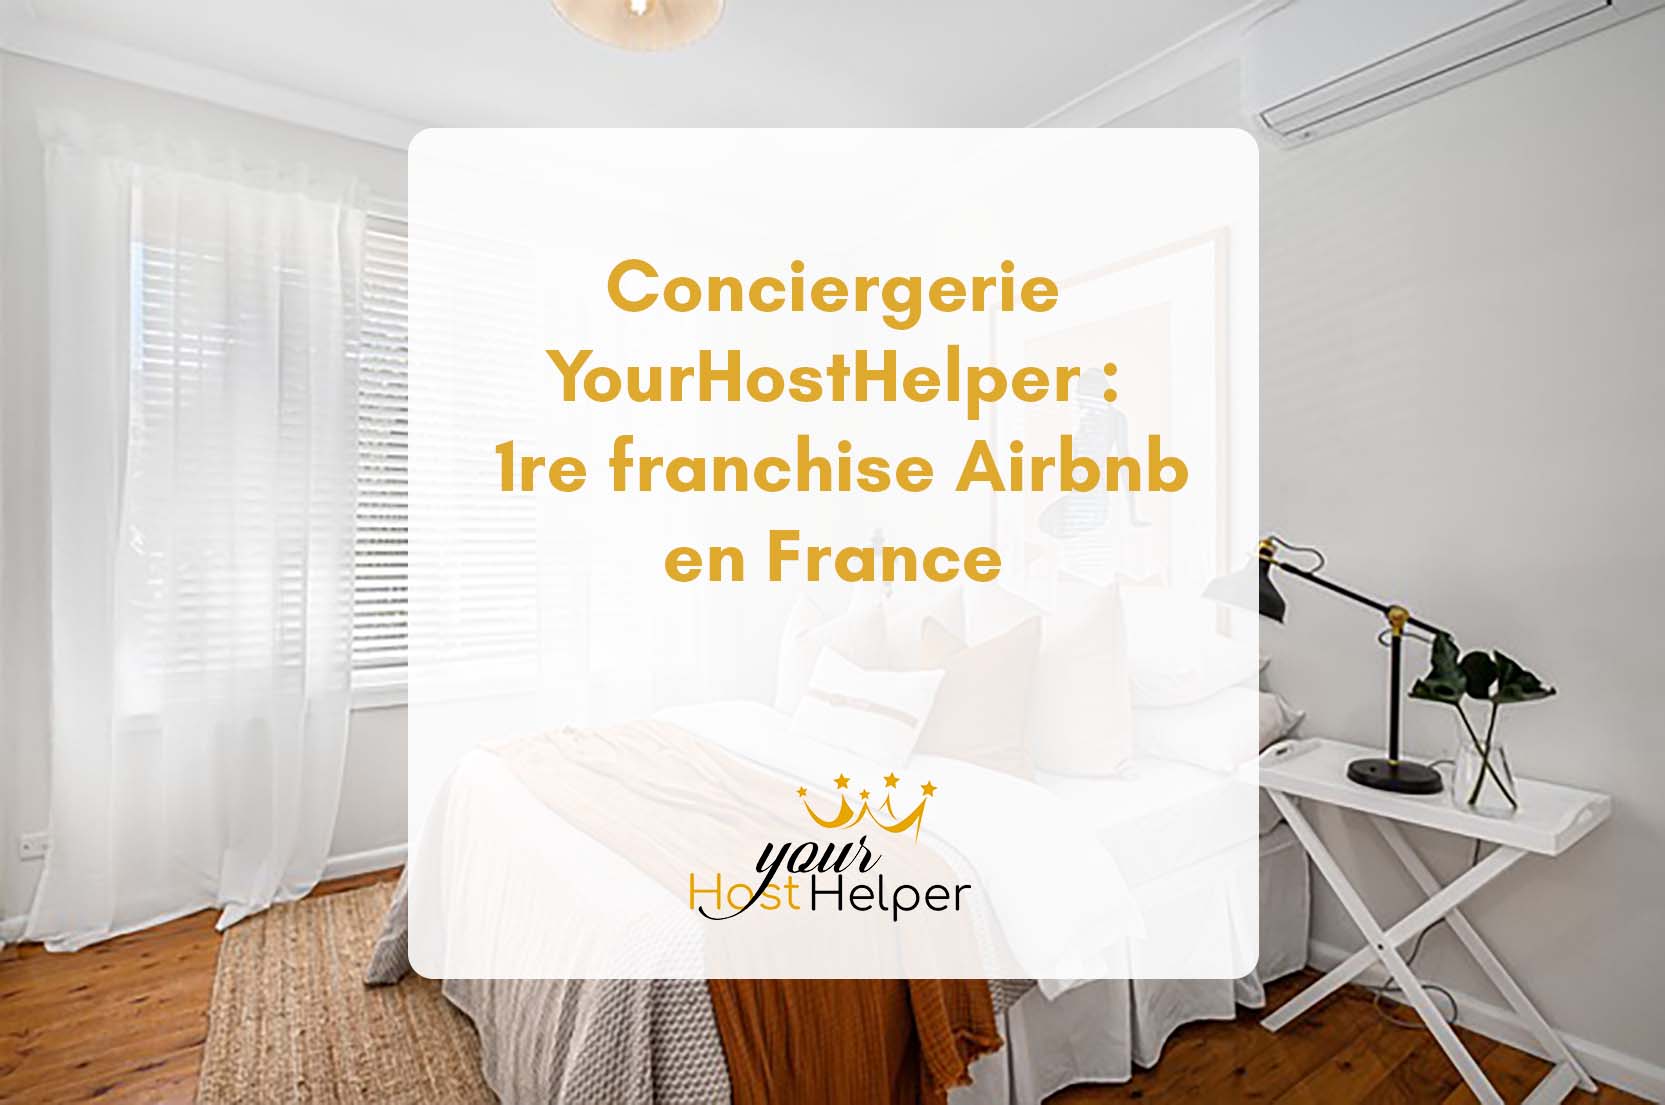 Вы просматриваете Conciergerie YourHostHelper: первую франшизу Airbnb во Франции, подробно описанную вашим консьержем Le Lavandou.